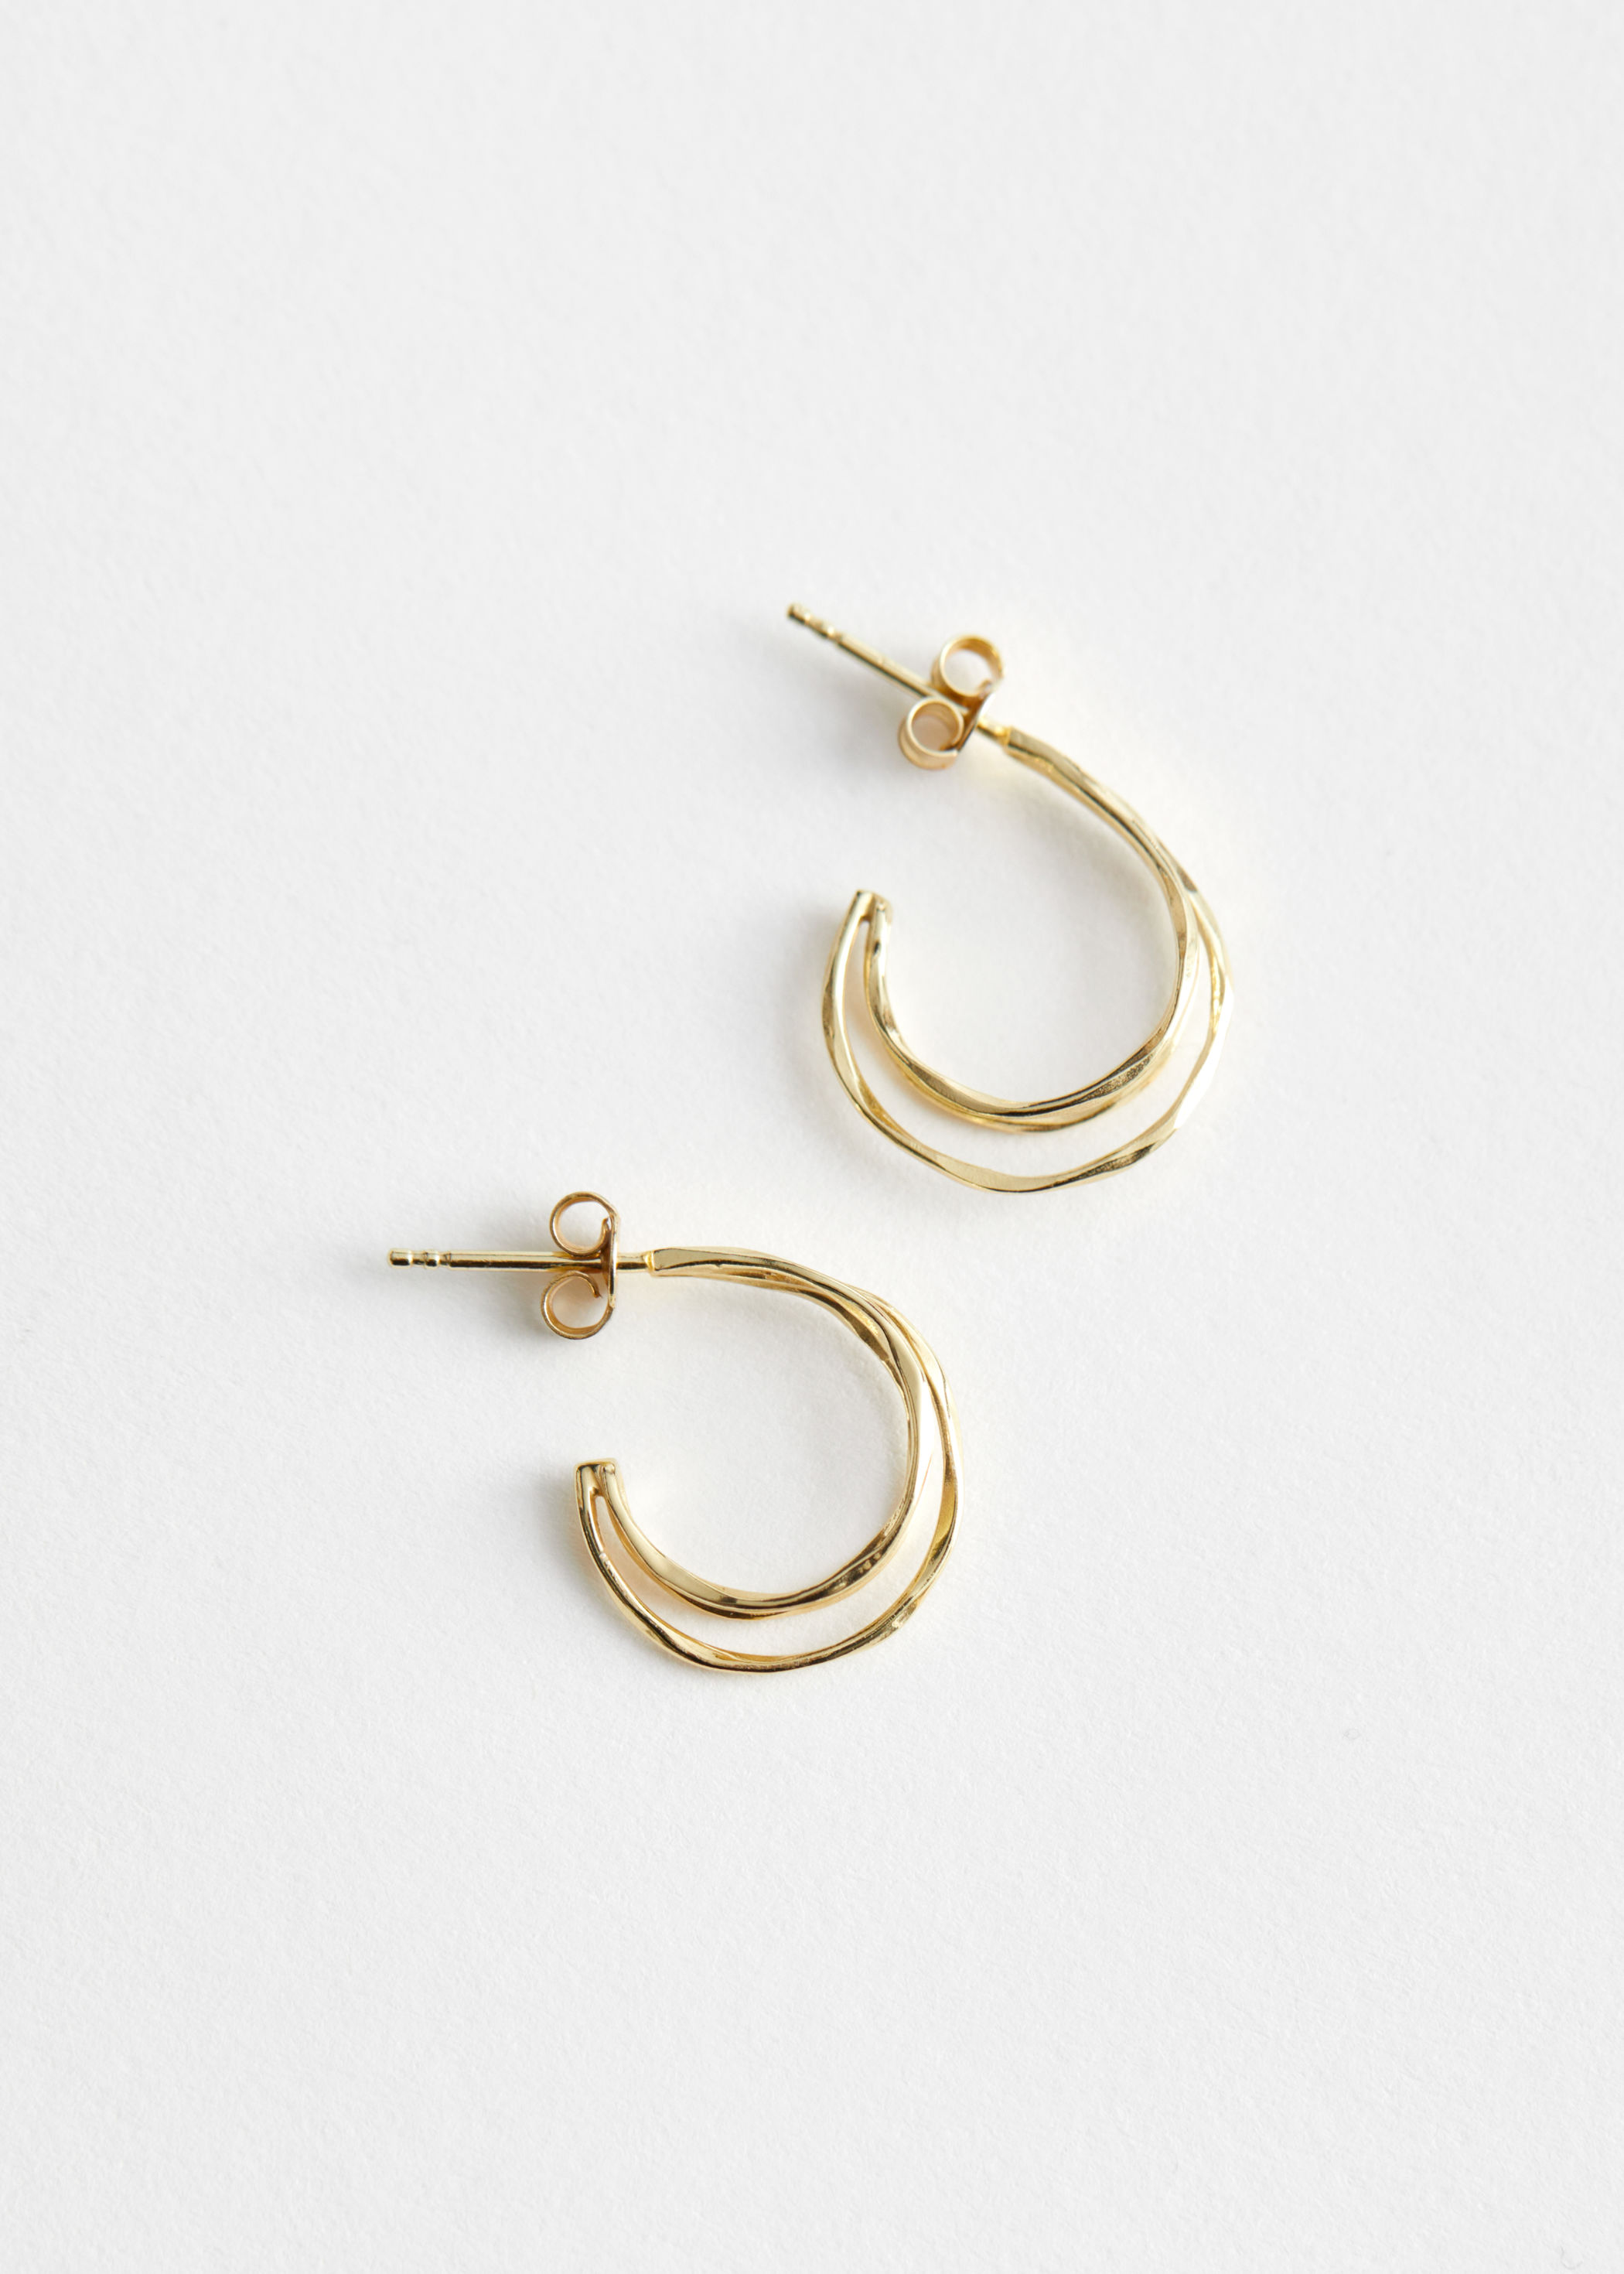 2676円 限定モデル アンドアザーストーリーズ レディース ジュエリー イヤリング Other Stories double hoop earrings in gold